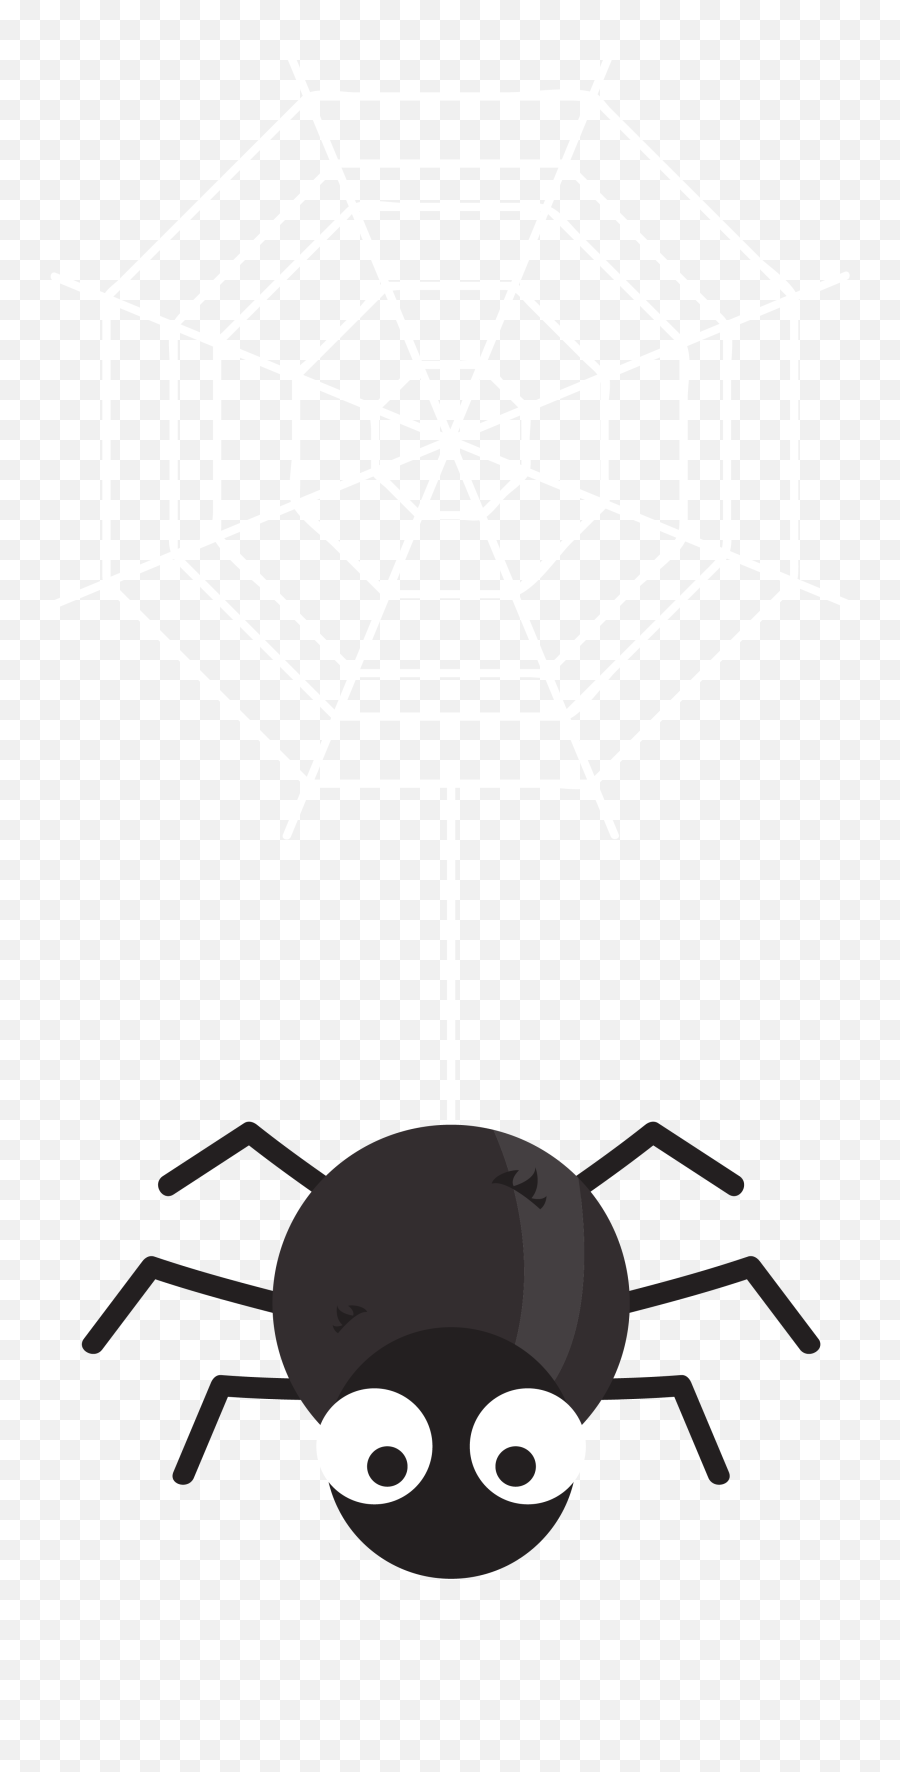 Download Free Png Spider Web Black House - Cartoon Gambar Sarang Laba Laba Vector,Cartoon Spider Png